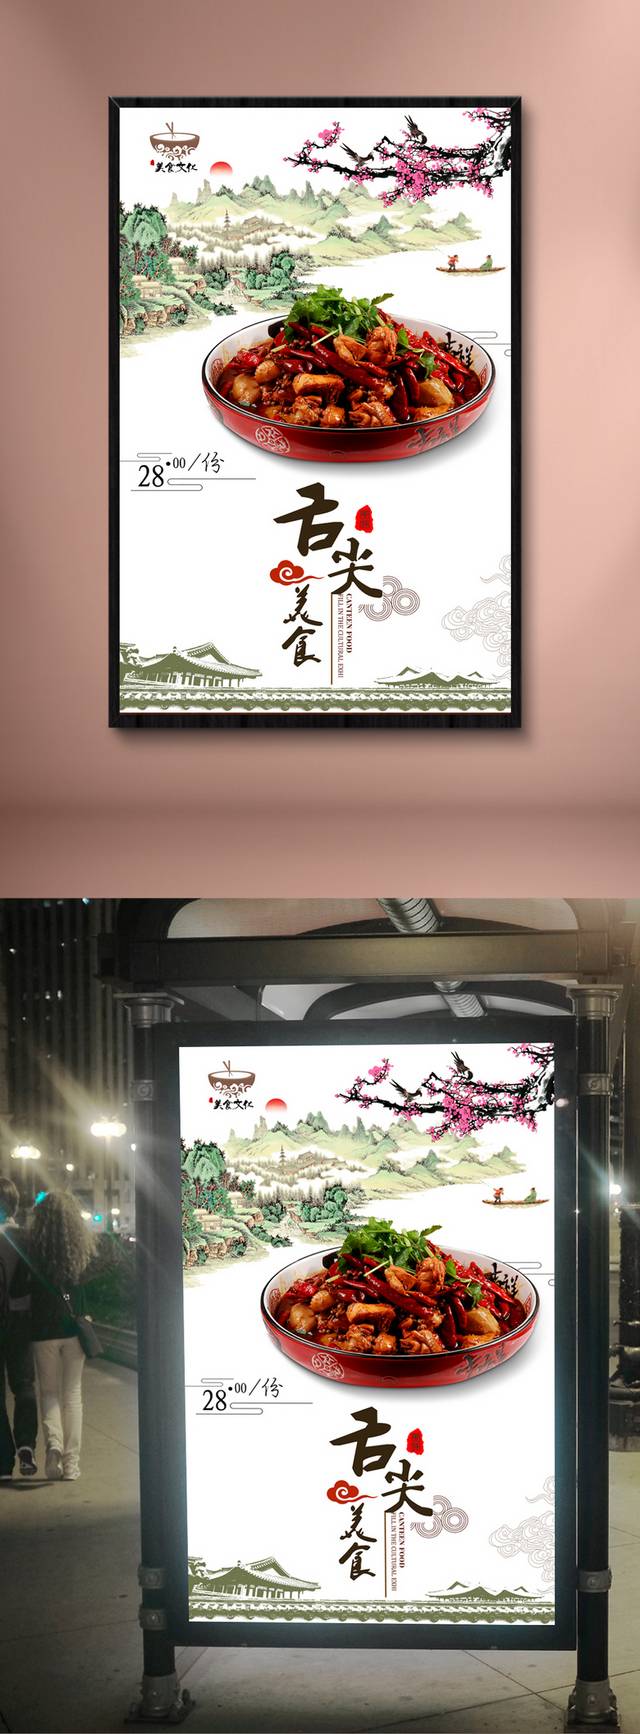 古典中国风烧鸡公宣传海报设计